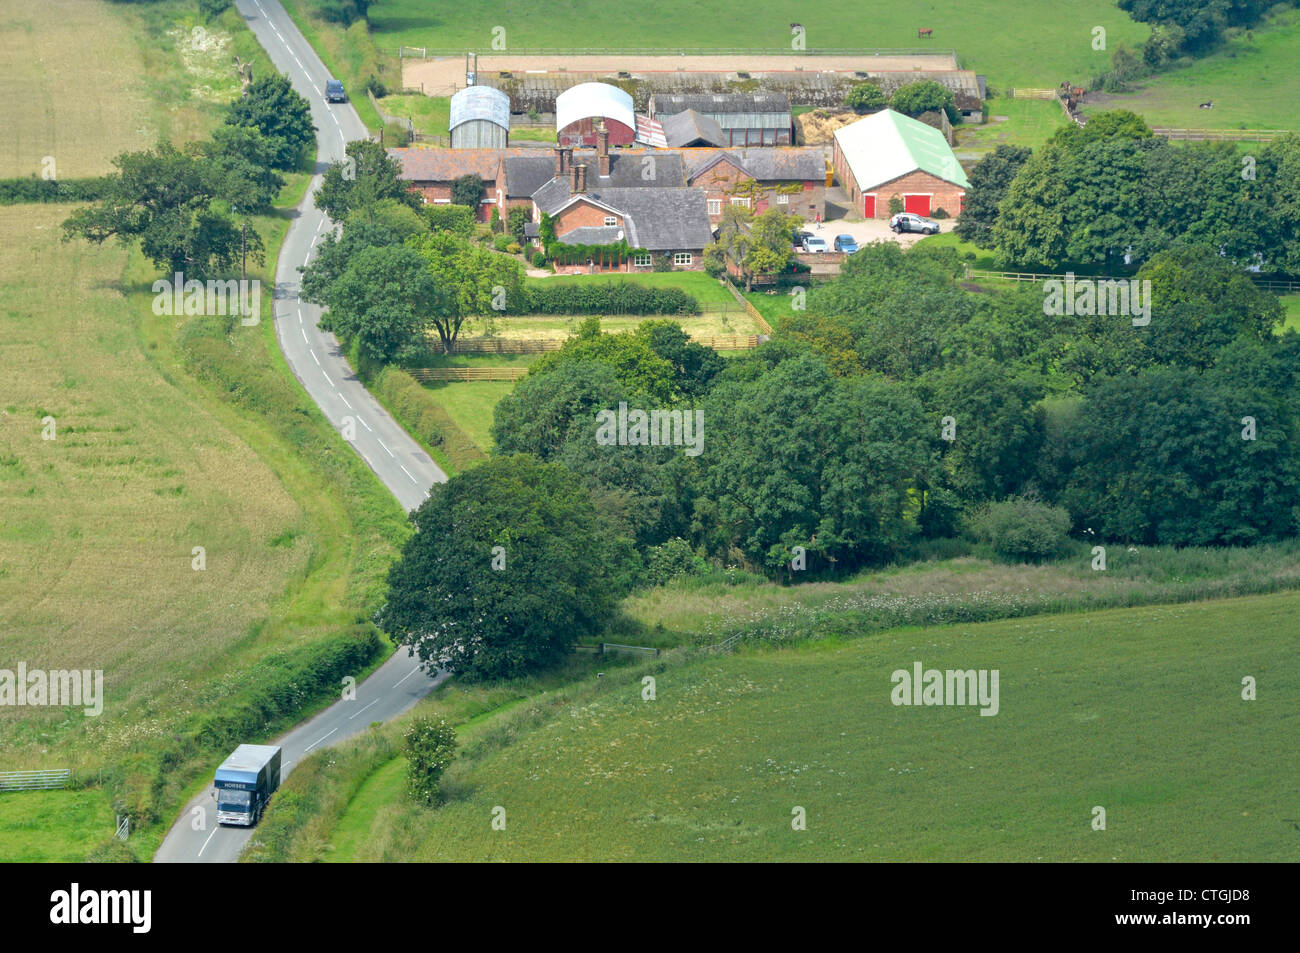 Vue aérienne de la plaine du Cheshire du paysage agricole regardant vers le bas sur les bâtiments agricoles et les fermes rurales fertiles dans le comté de Cheshire Angleterre Banque D'Images